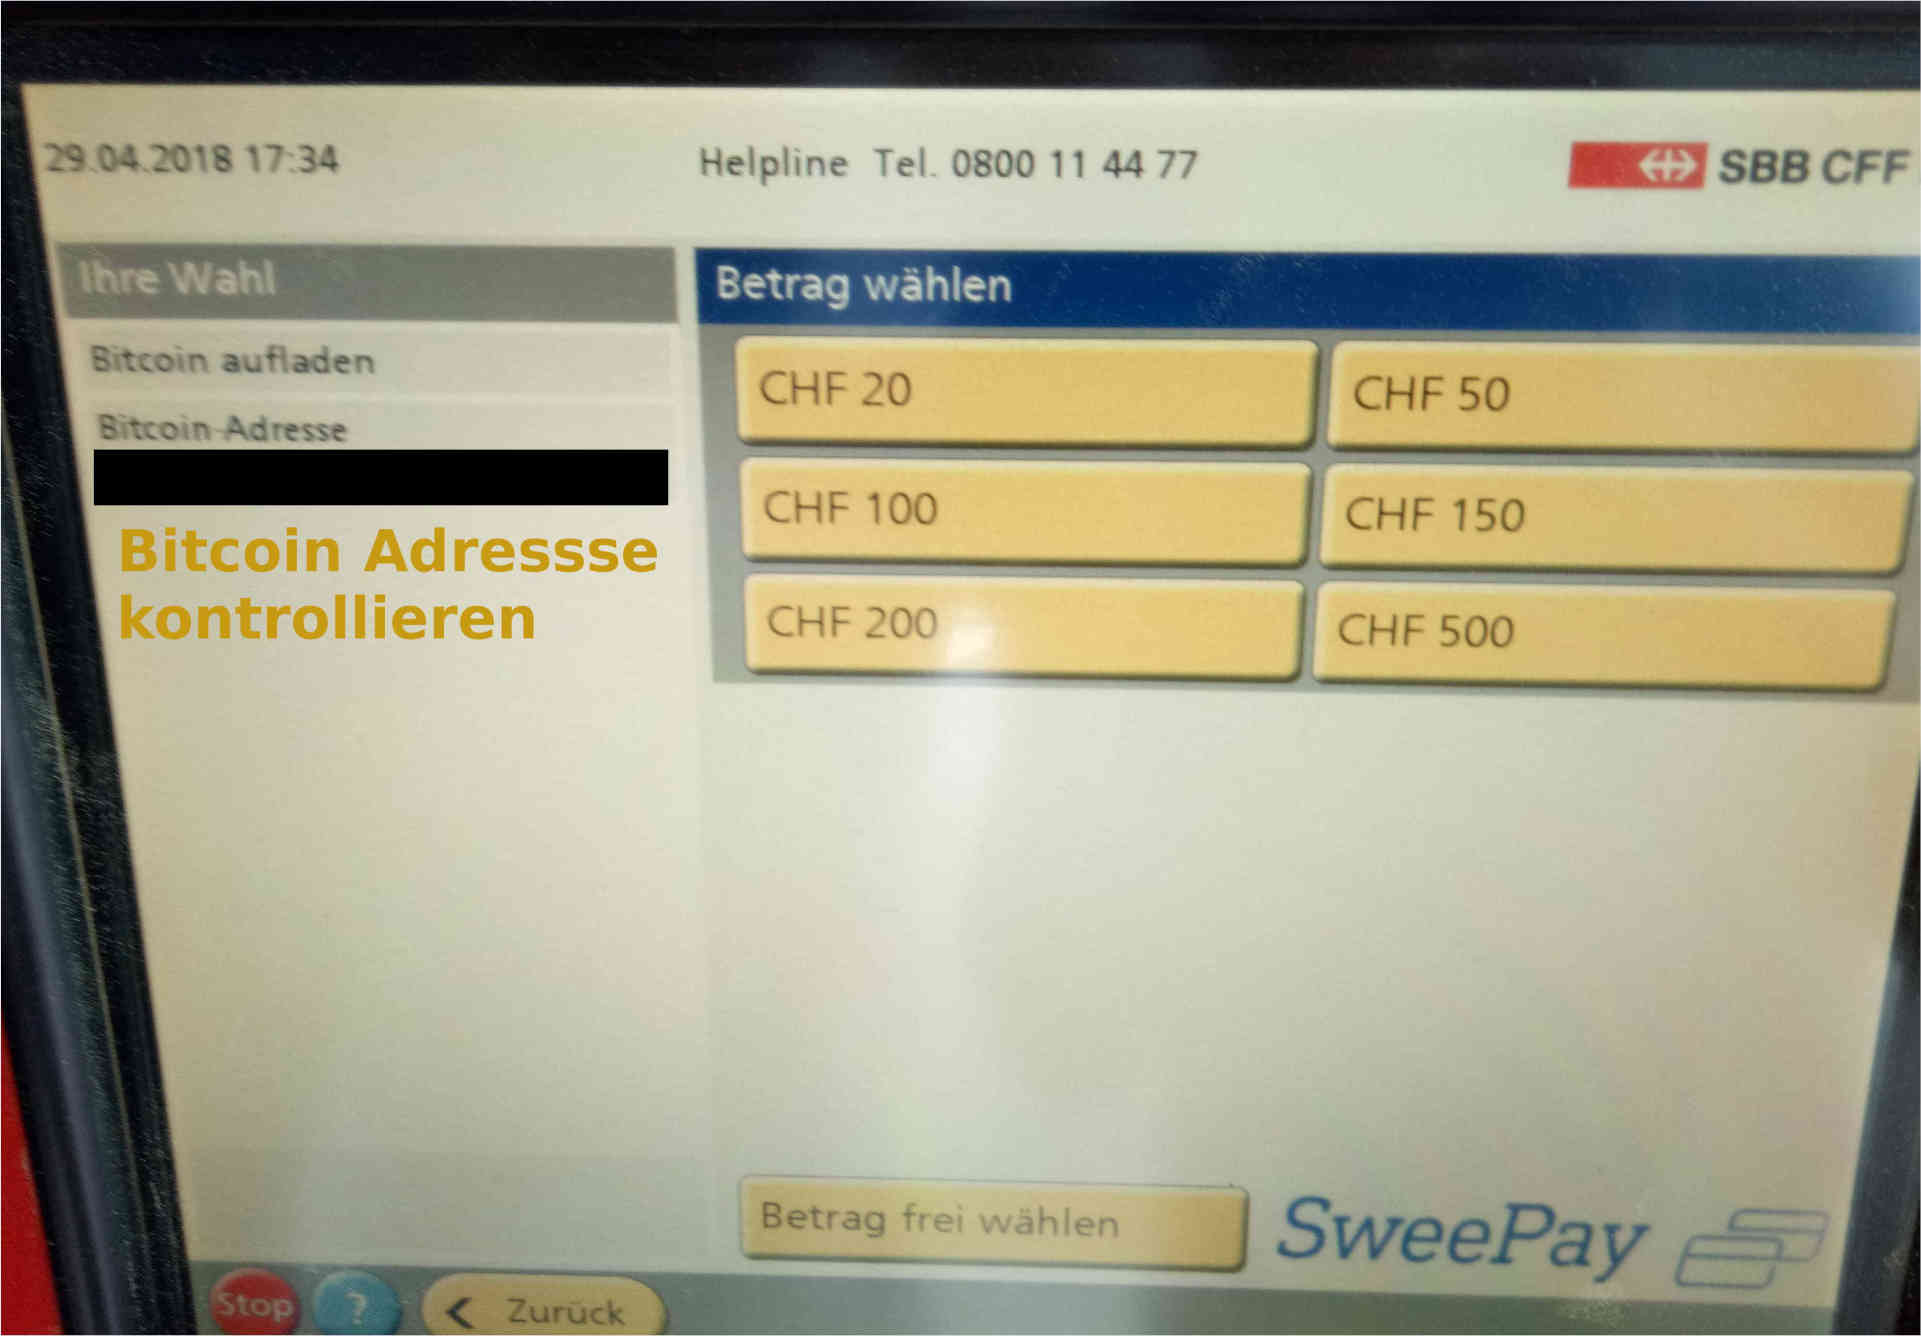 Bitcoin aufladen in der Schweiz bei der SBB (Schweizer Banh) Betrag wählen